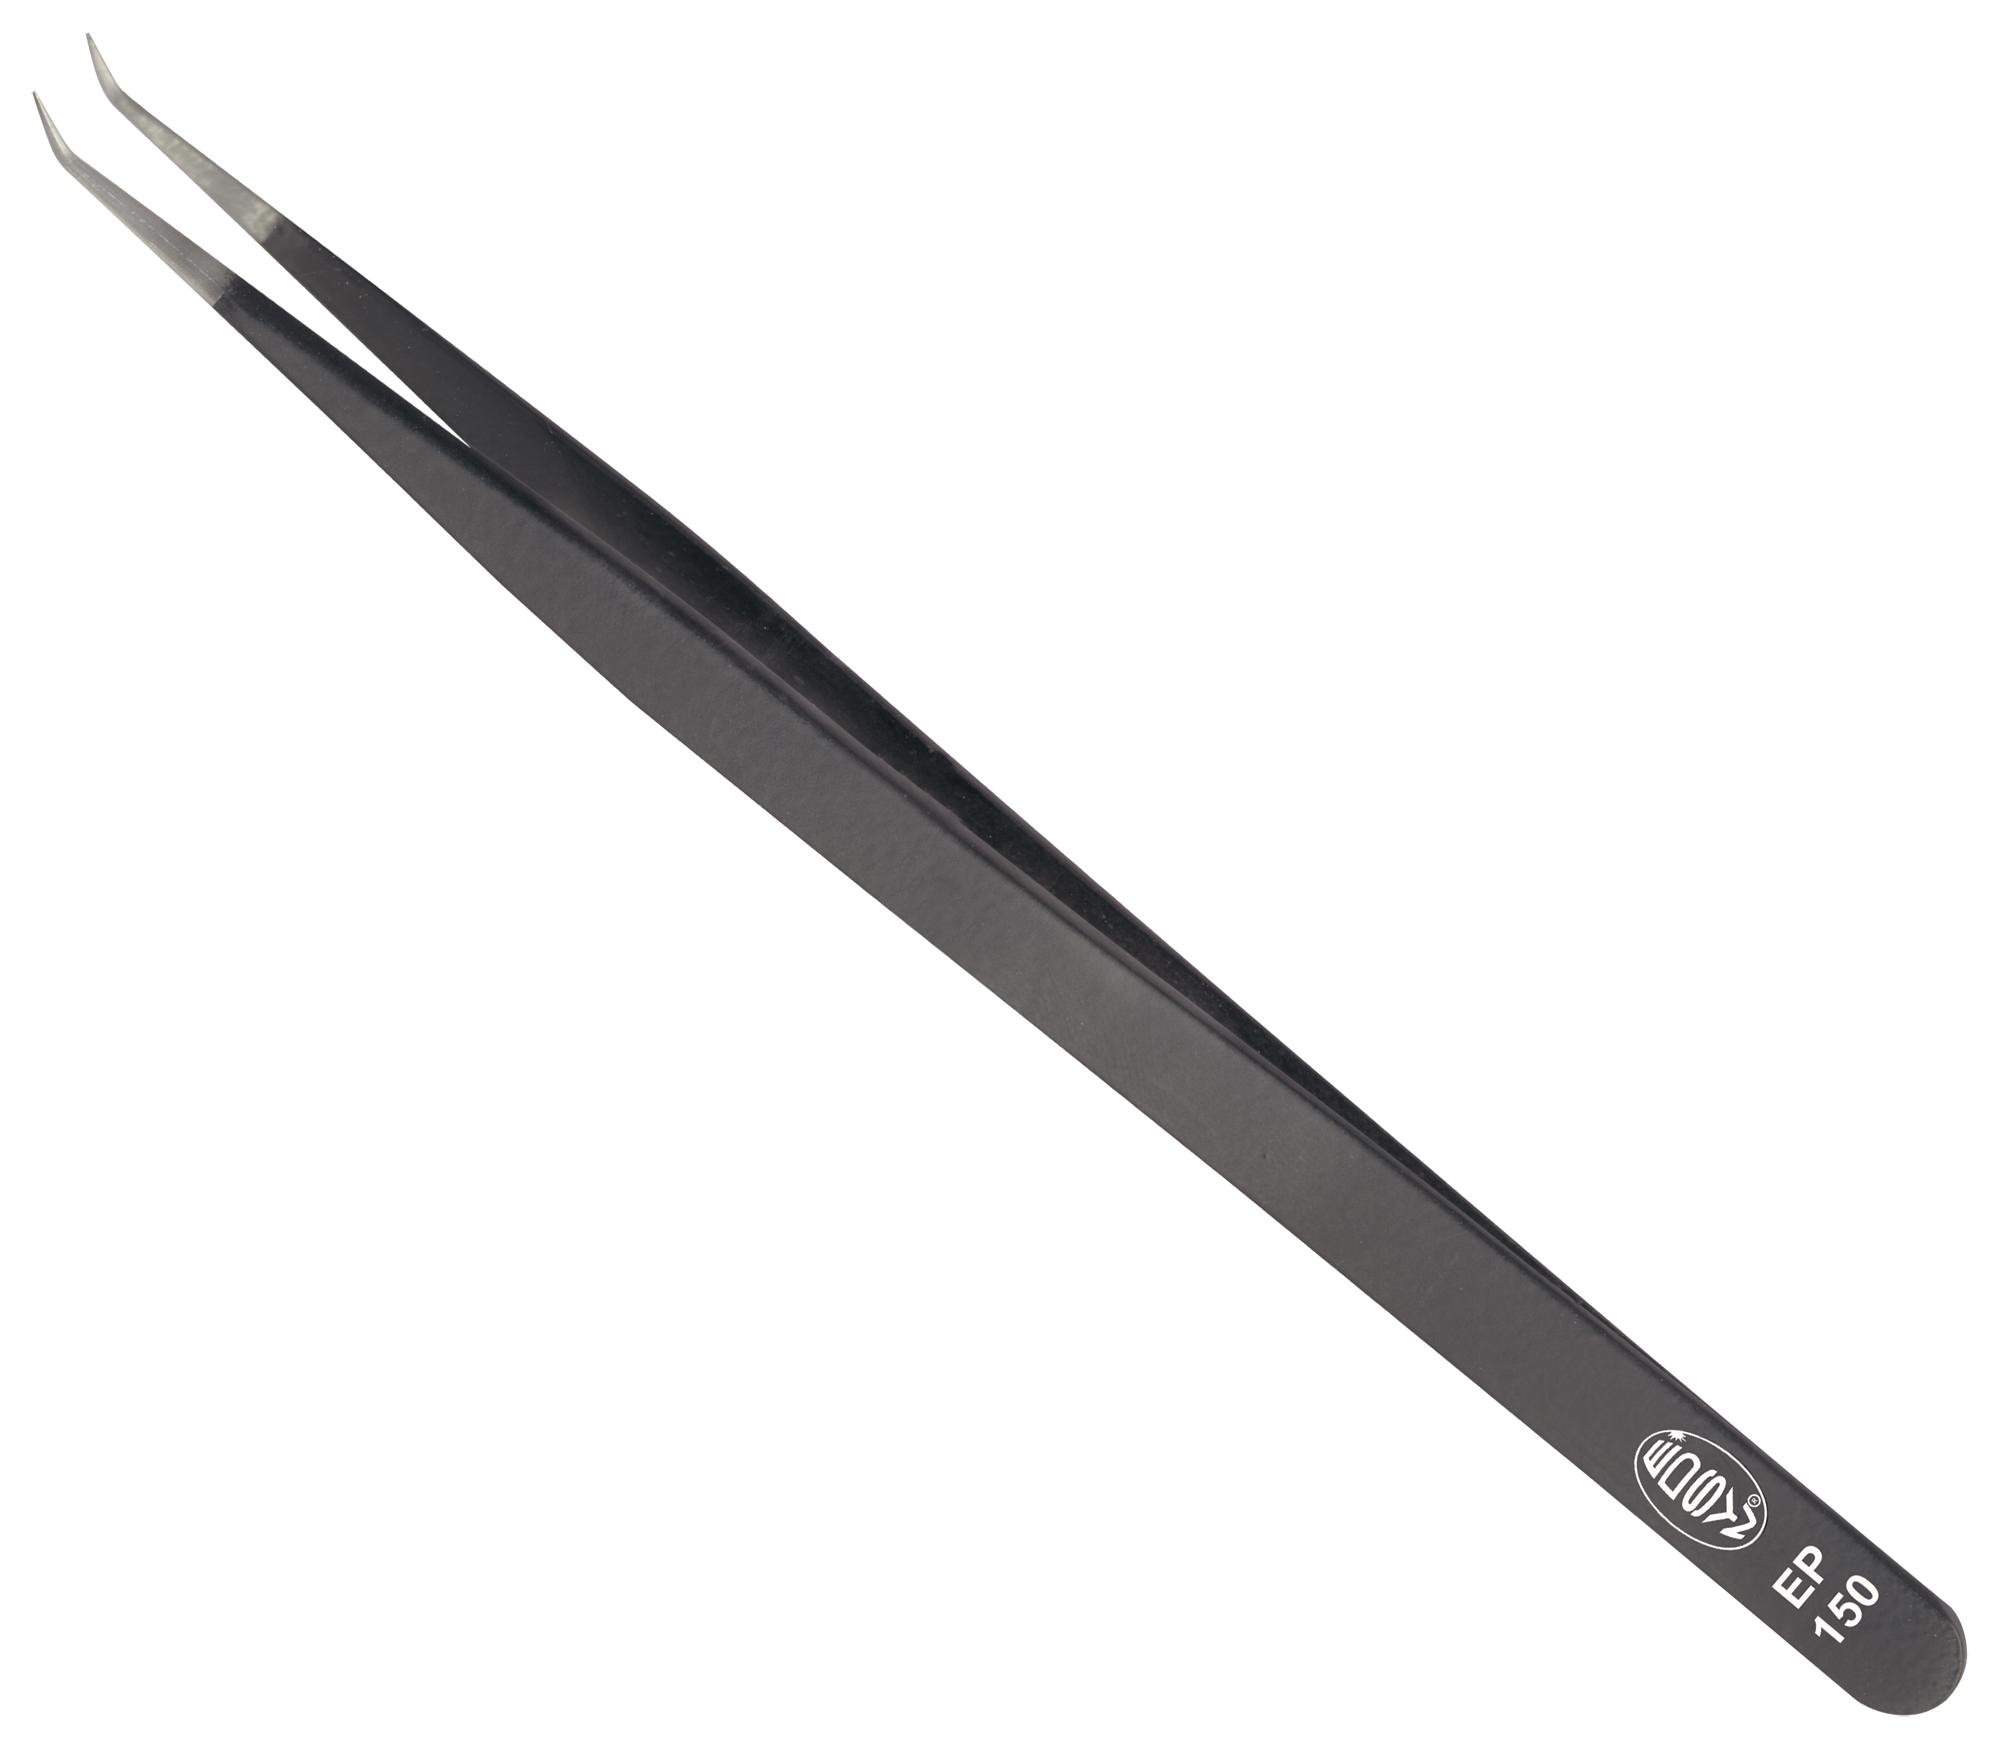 Edsyn Ep 150 Tweezer Tip, Curve/pointed, 133mm